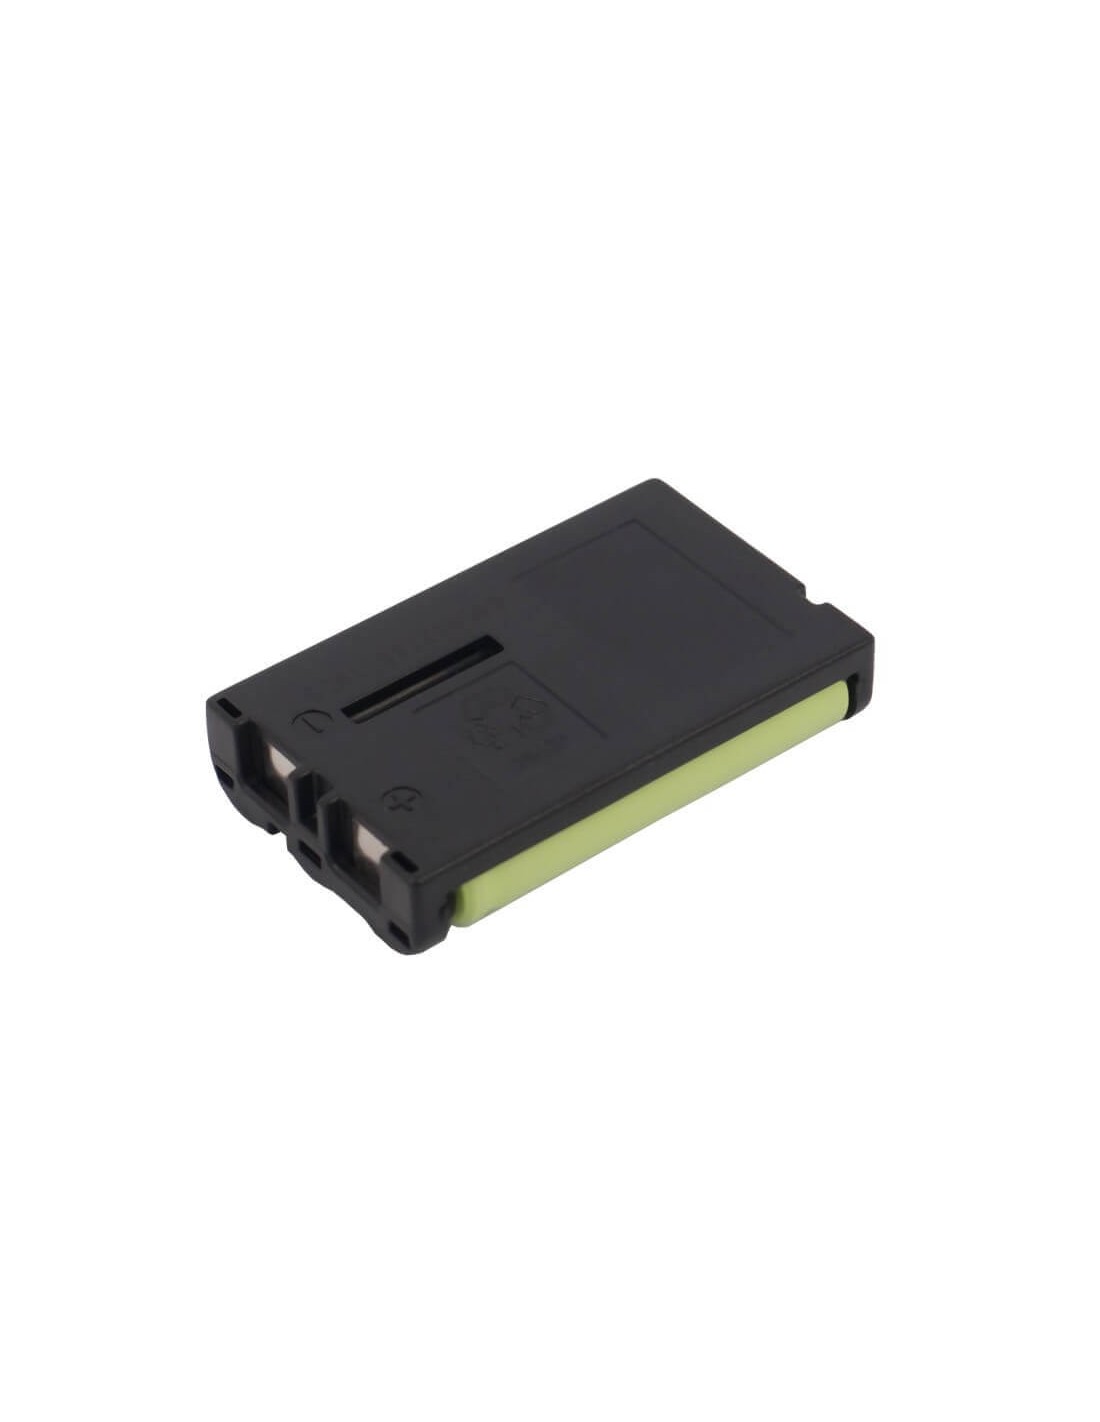 Battery for Uniden, Clx465, Clx475-3, Clx485, Clx-485, 3.6V, 900mAh - 3.24Wh